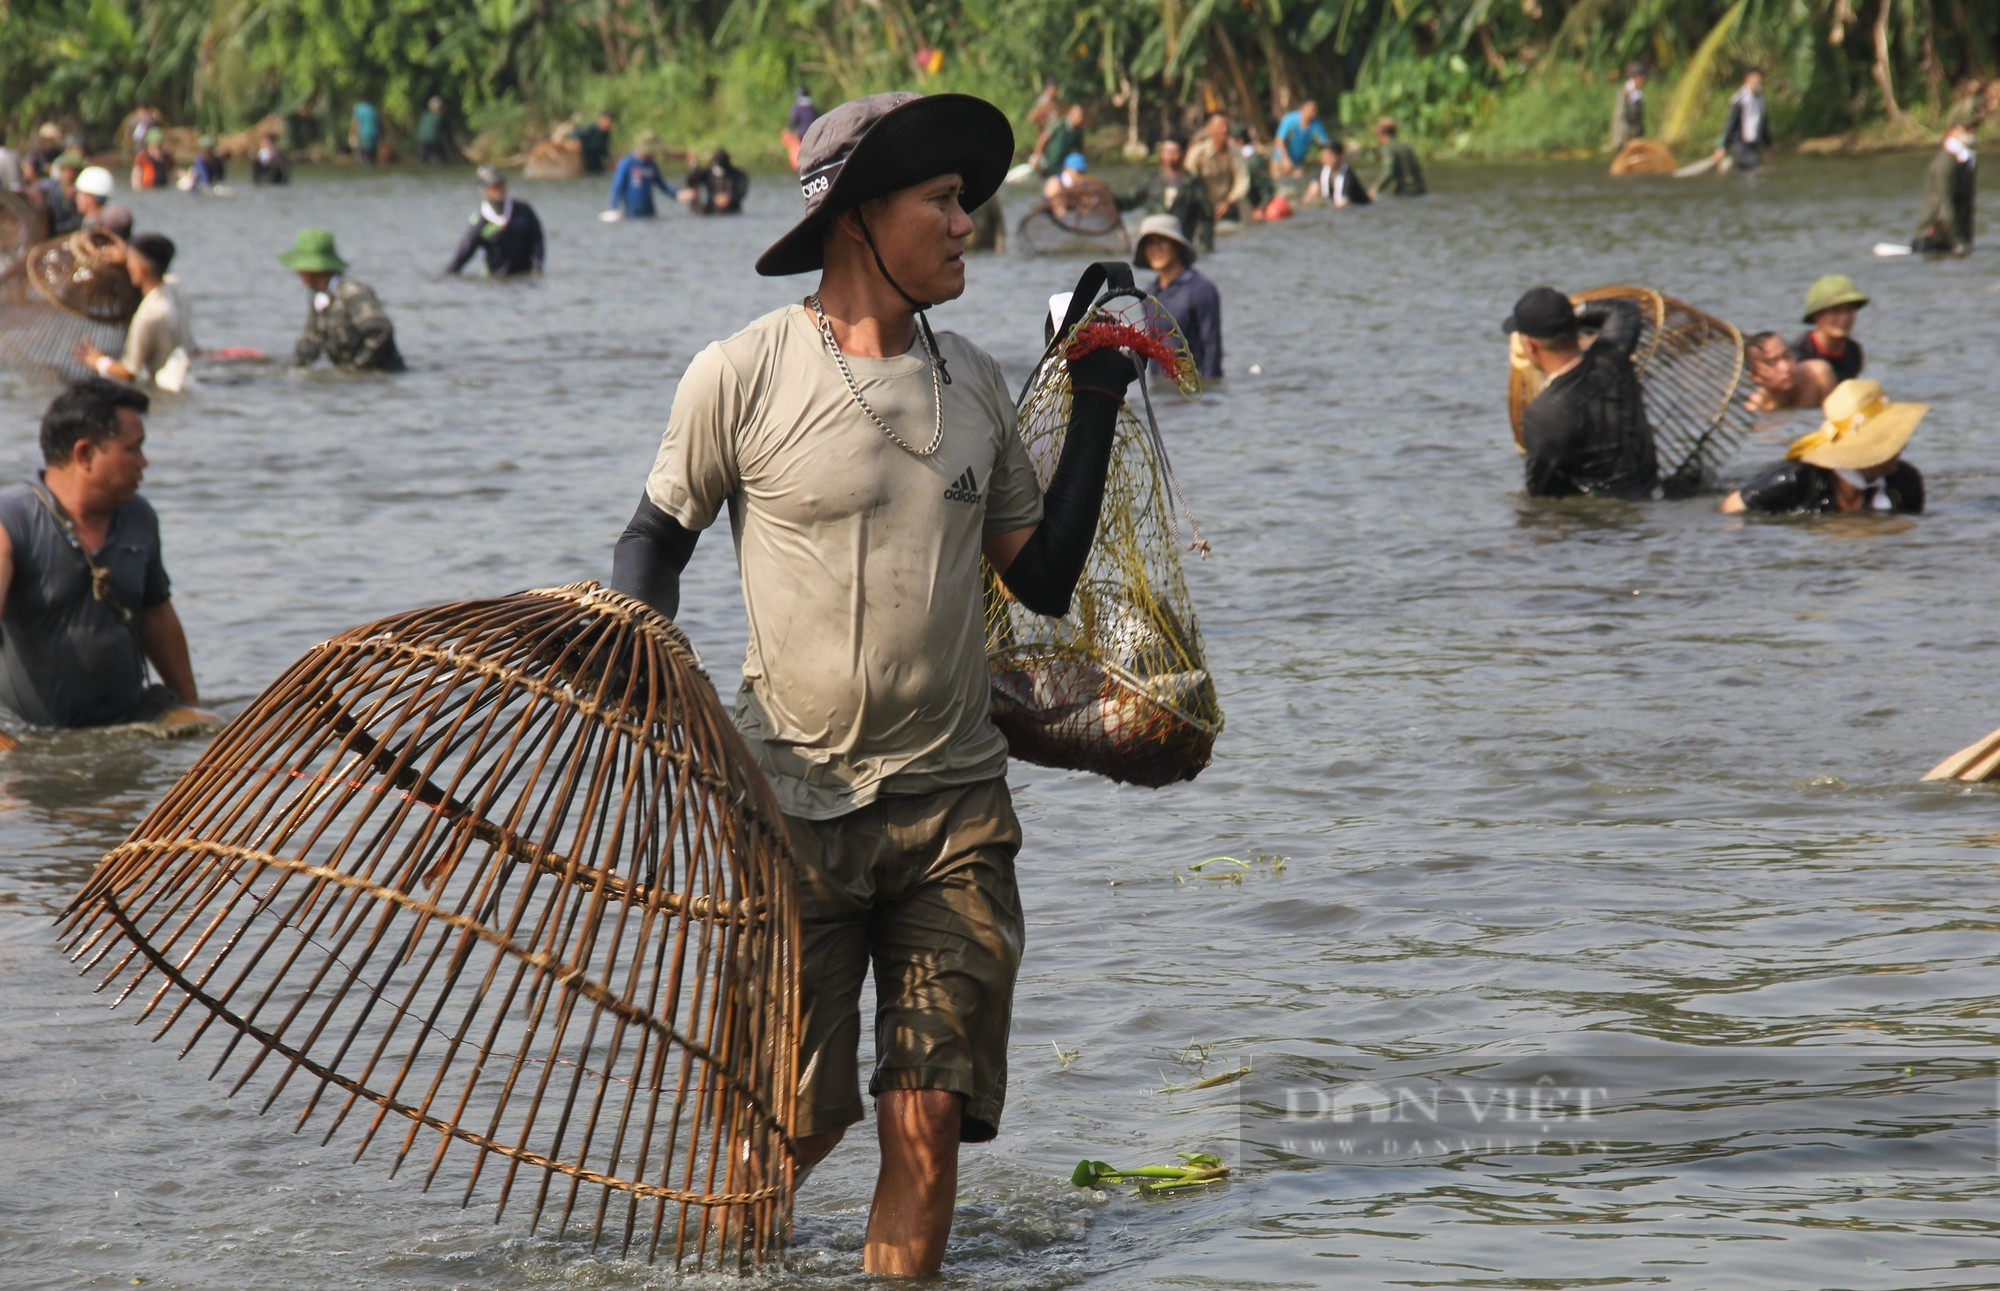 Sau một hồi trống lớn, hơn 600 người ào xuống bàu Mực ở Nghệ An trổ tài đánh cá bằng nơm - Ảnh 11.